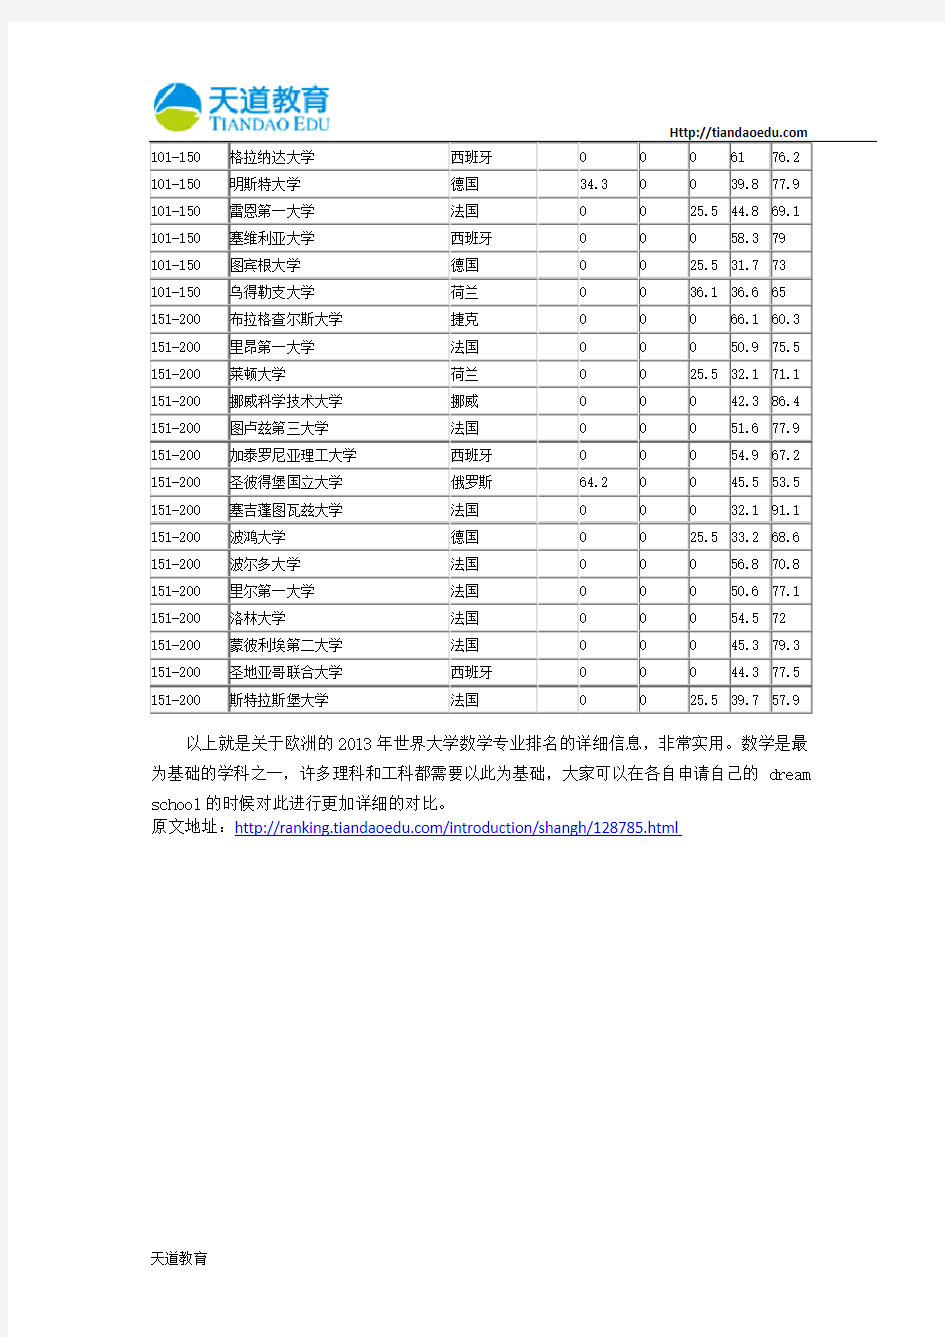 【天道独家】2013年世界大学数学专业排名-欧洲